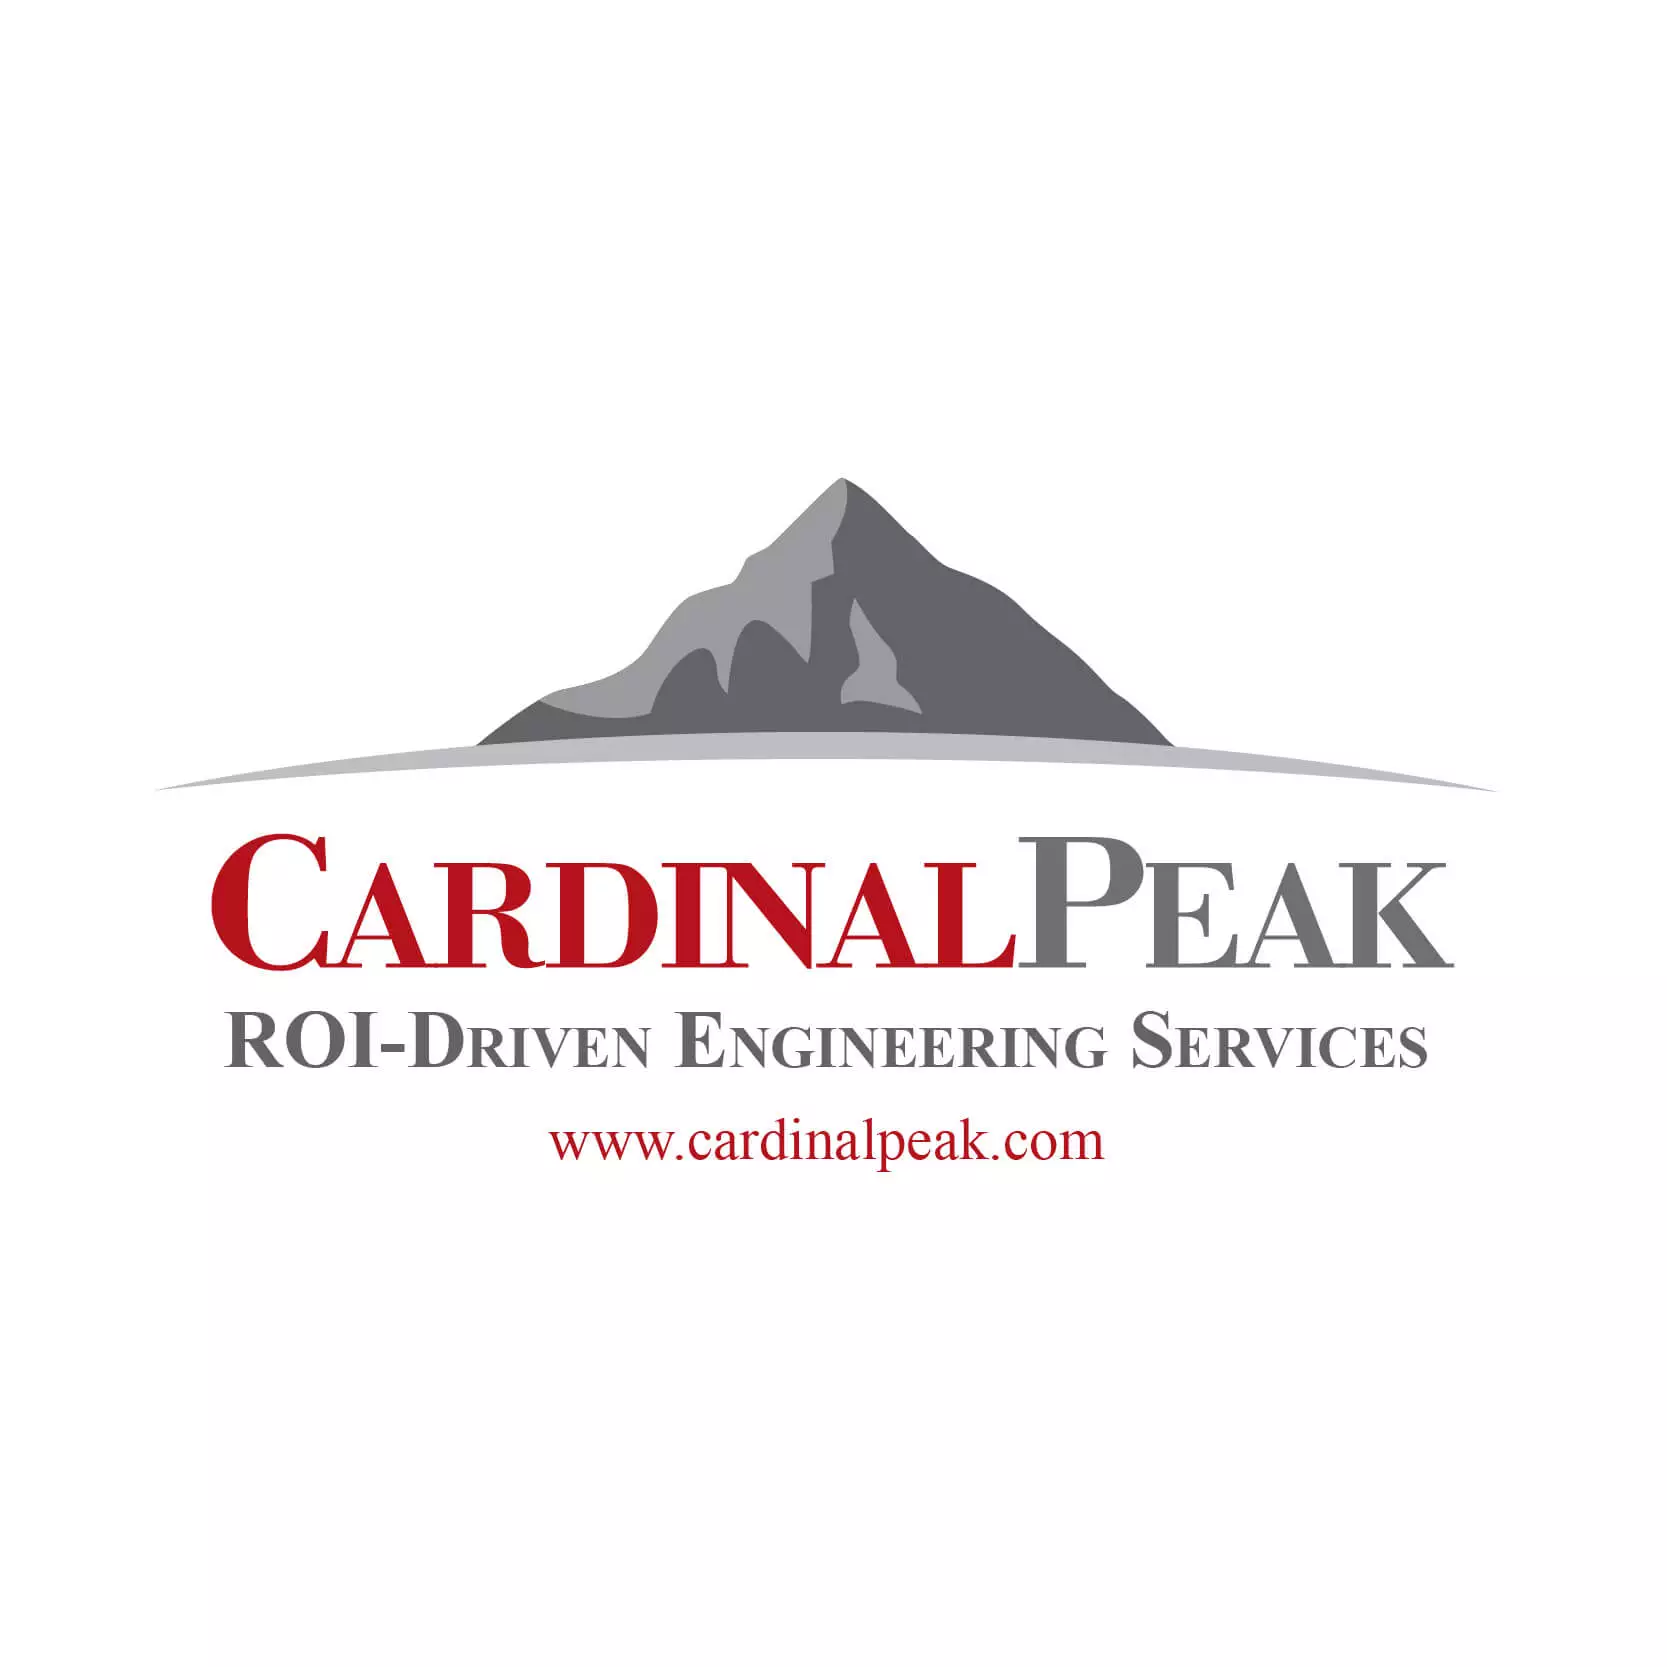 Cardinal Peak logo placeholder